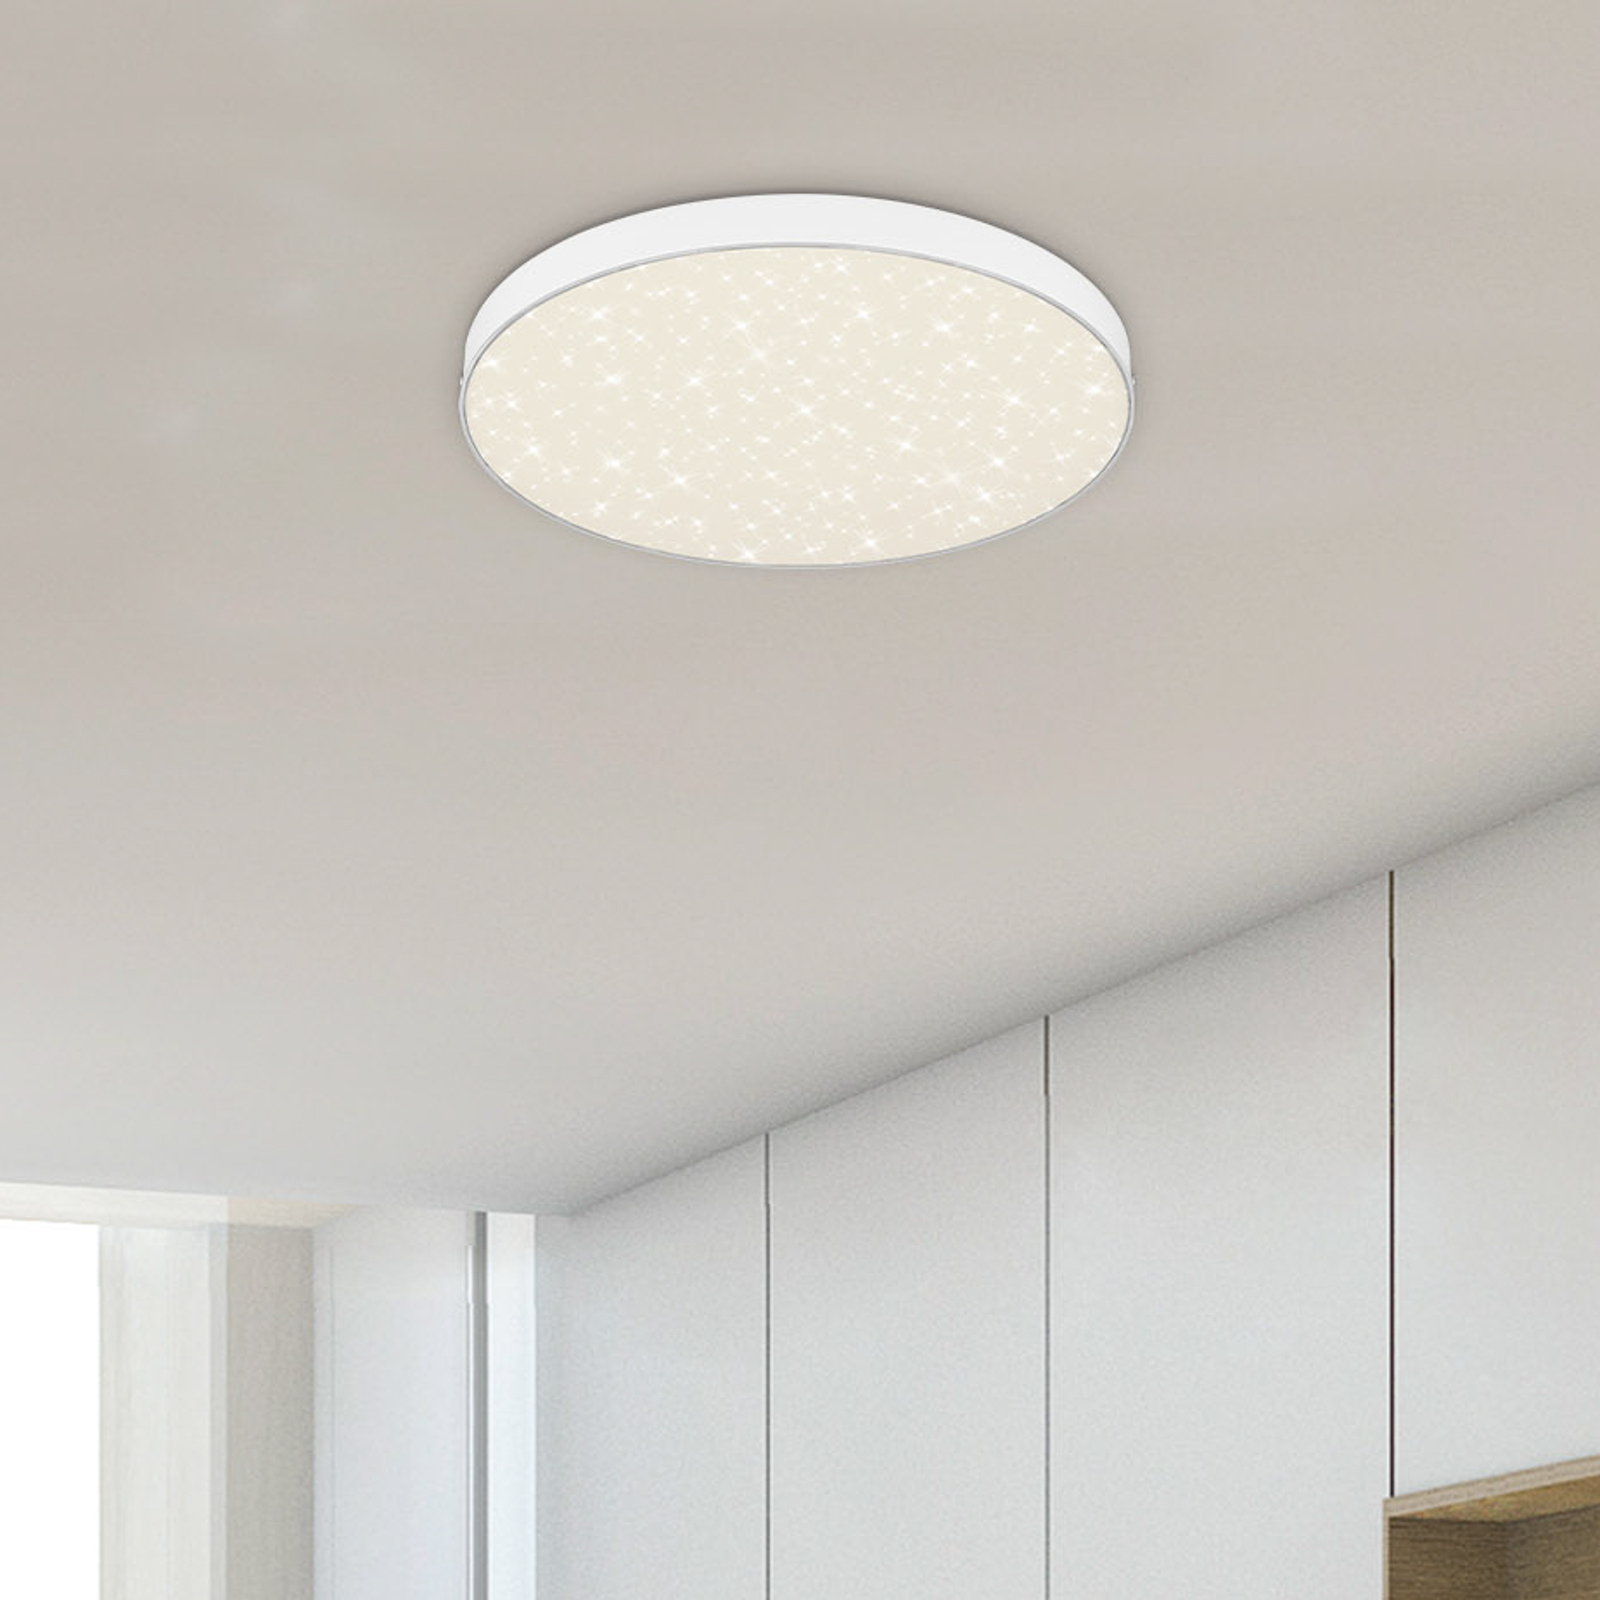 Flame Star LED ceiling light, Ø 28.7 cm, white